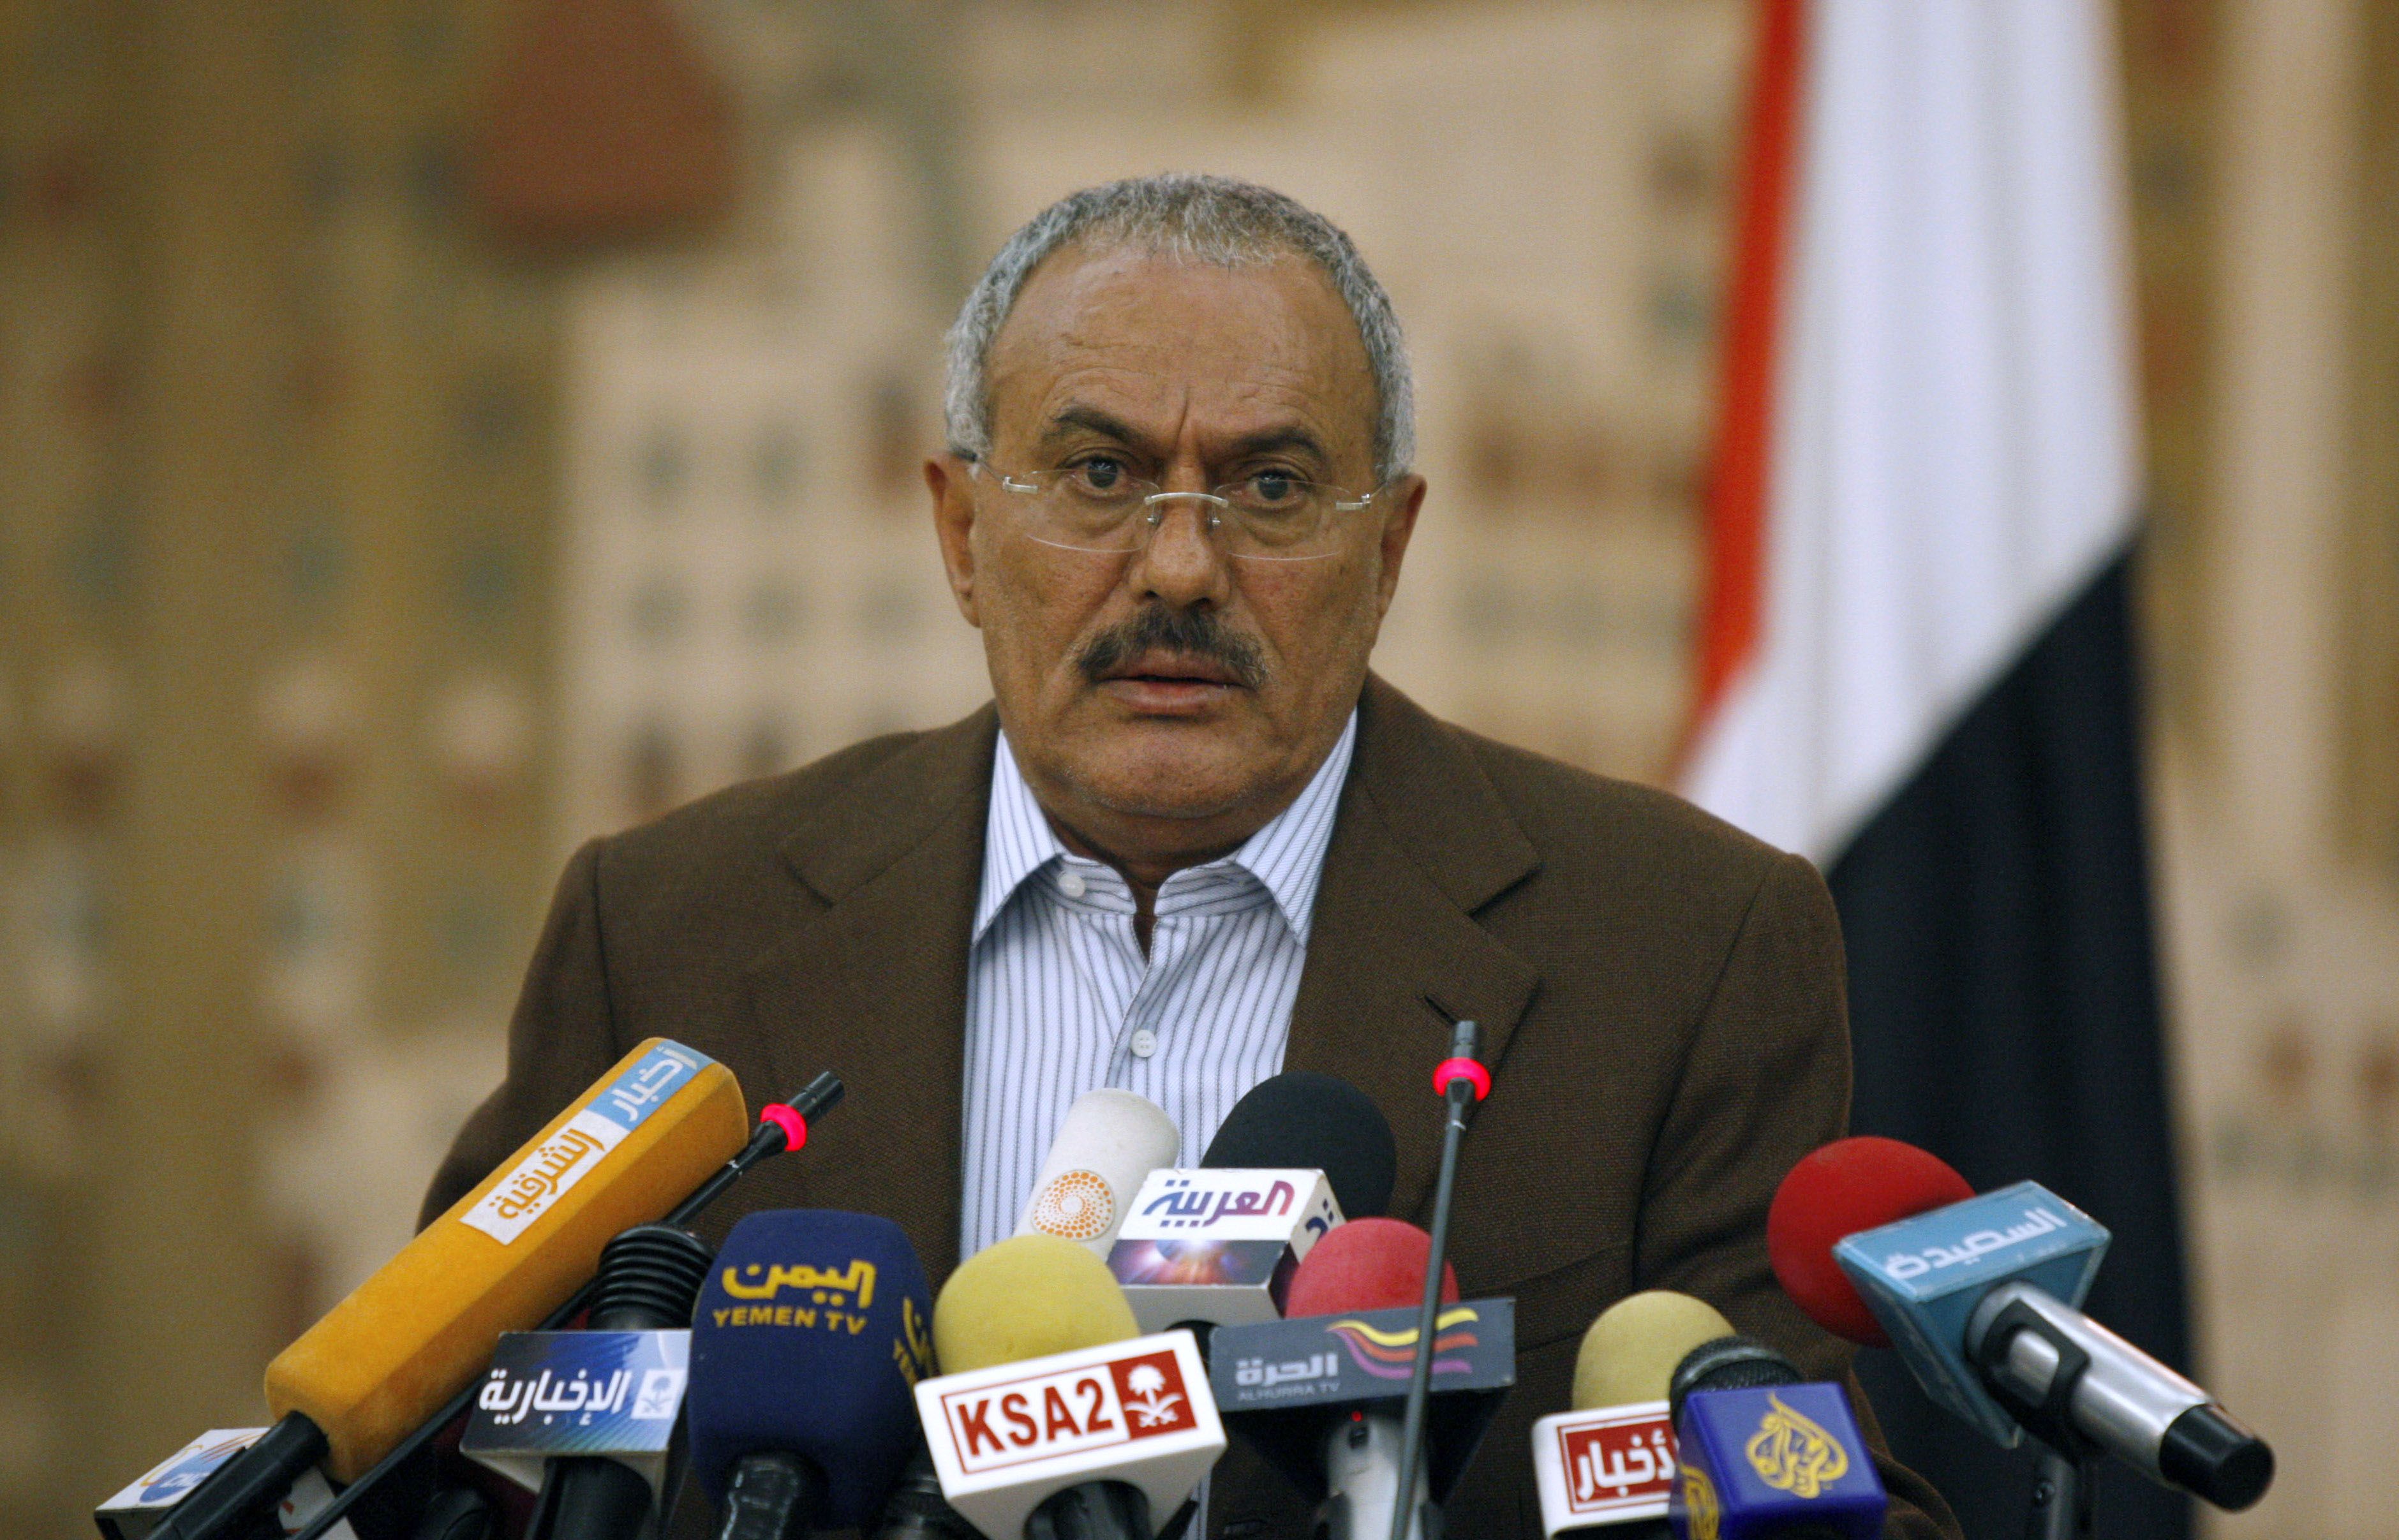 Jemen, USA, Revolution, Ali Abdullah Saleh, Uppror, Demonstration, President, Avgår